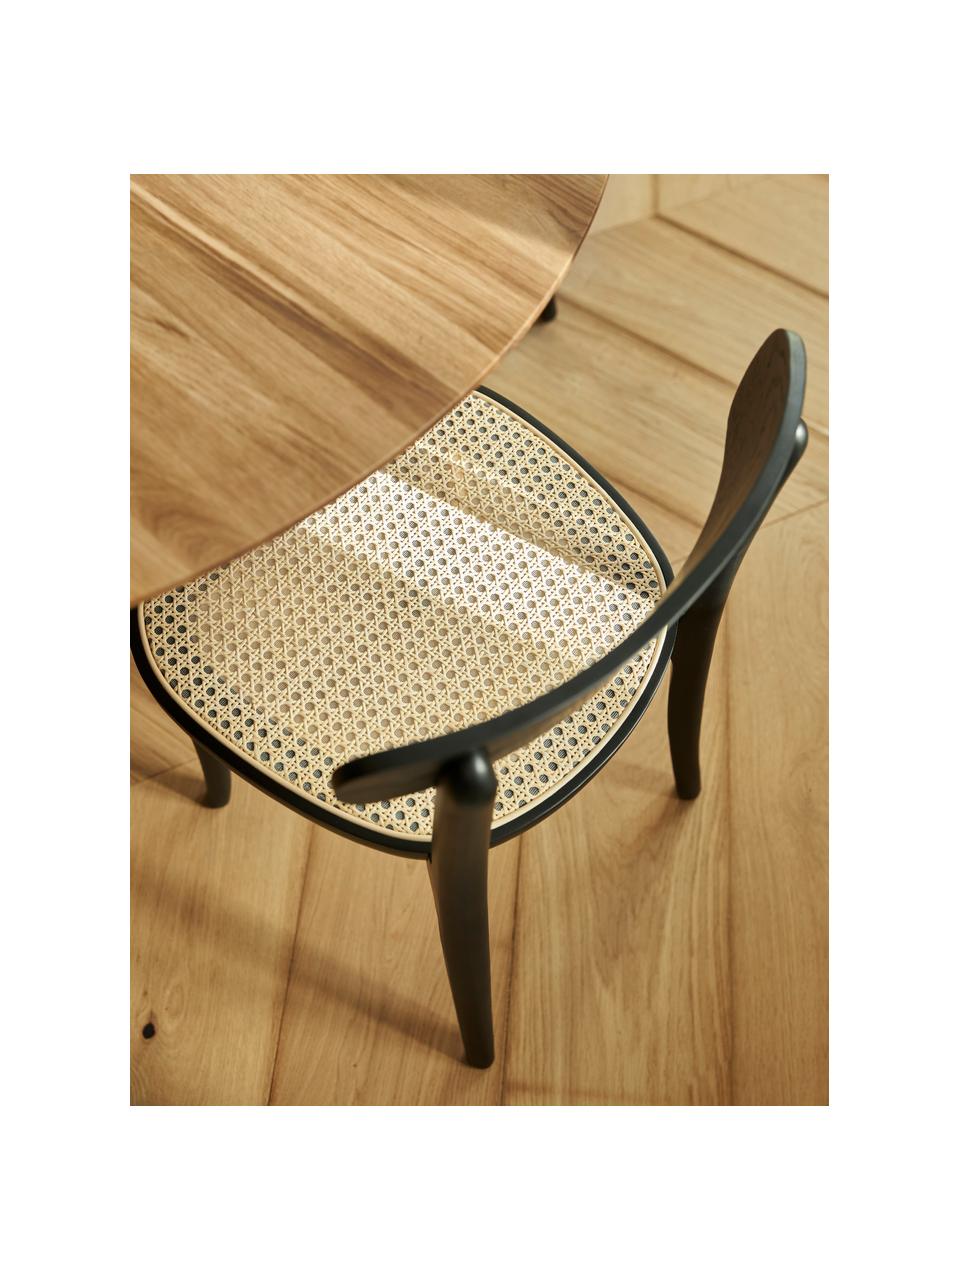 Houten stoelen Richie met Weens vlechtwerk, 2 stuks, Zitvlak: rotan, Frame: massief beukenhout, Rotan, beukenhout zwart gelakt, B 45 x H 75 cm